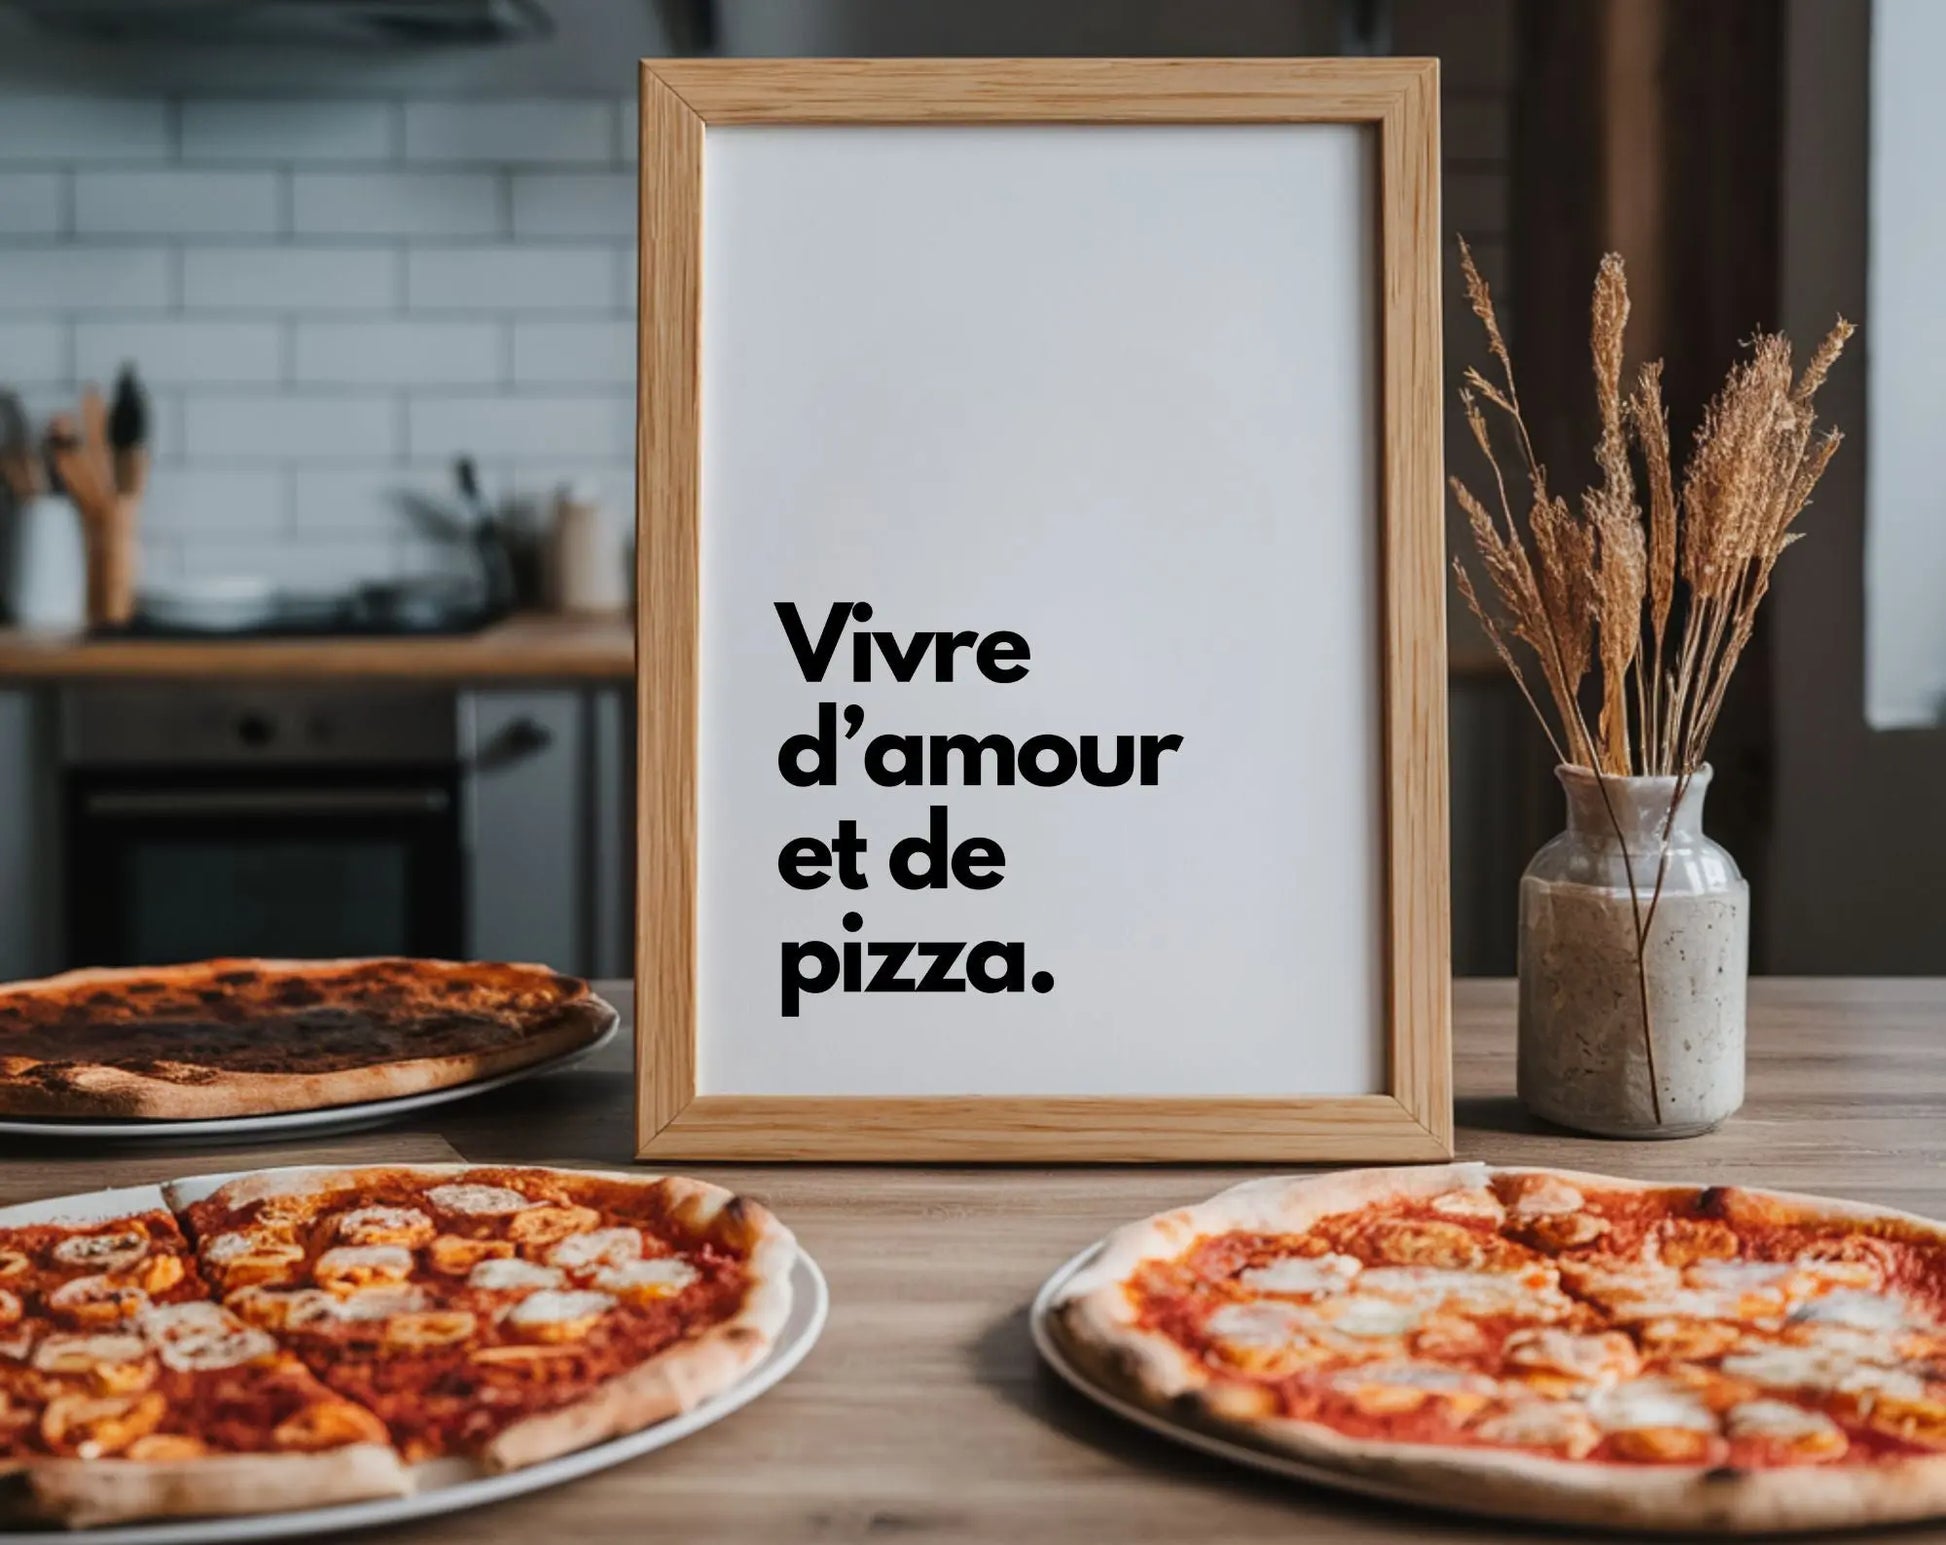 Vivre d'amour et de pizza - Affiche humour citation cuisine FLTMfrance